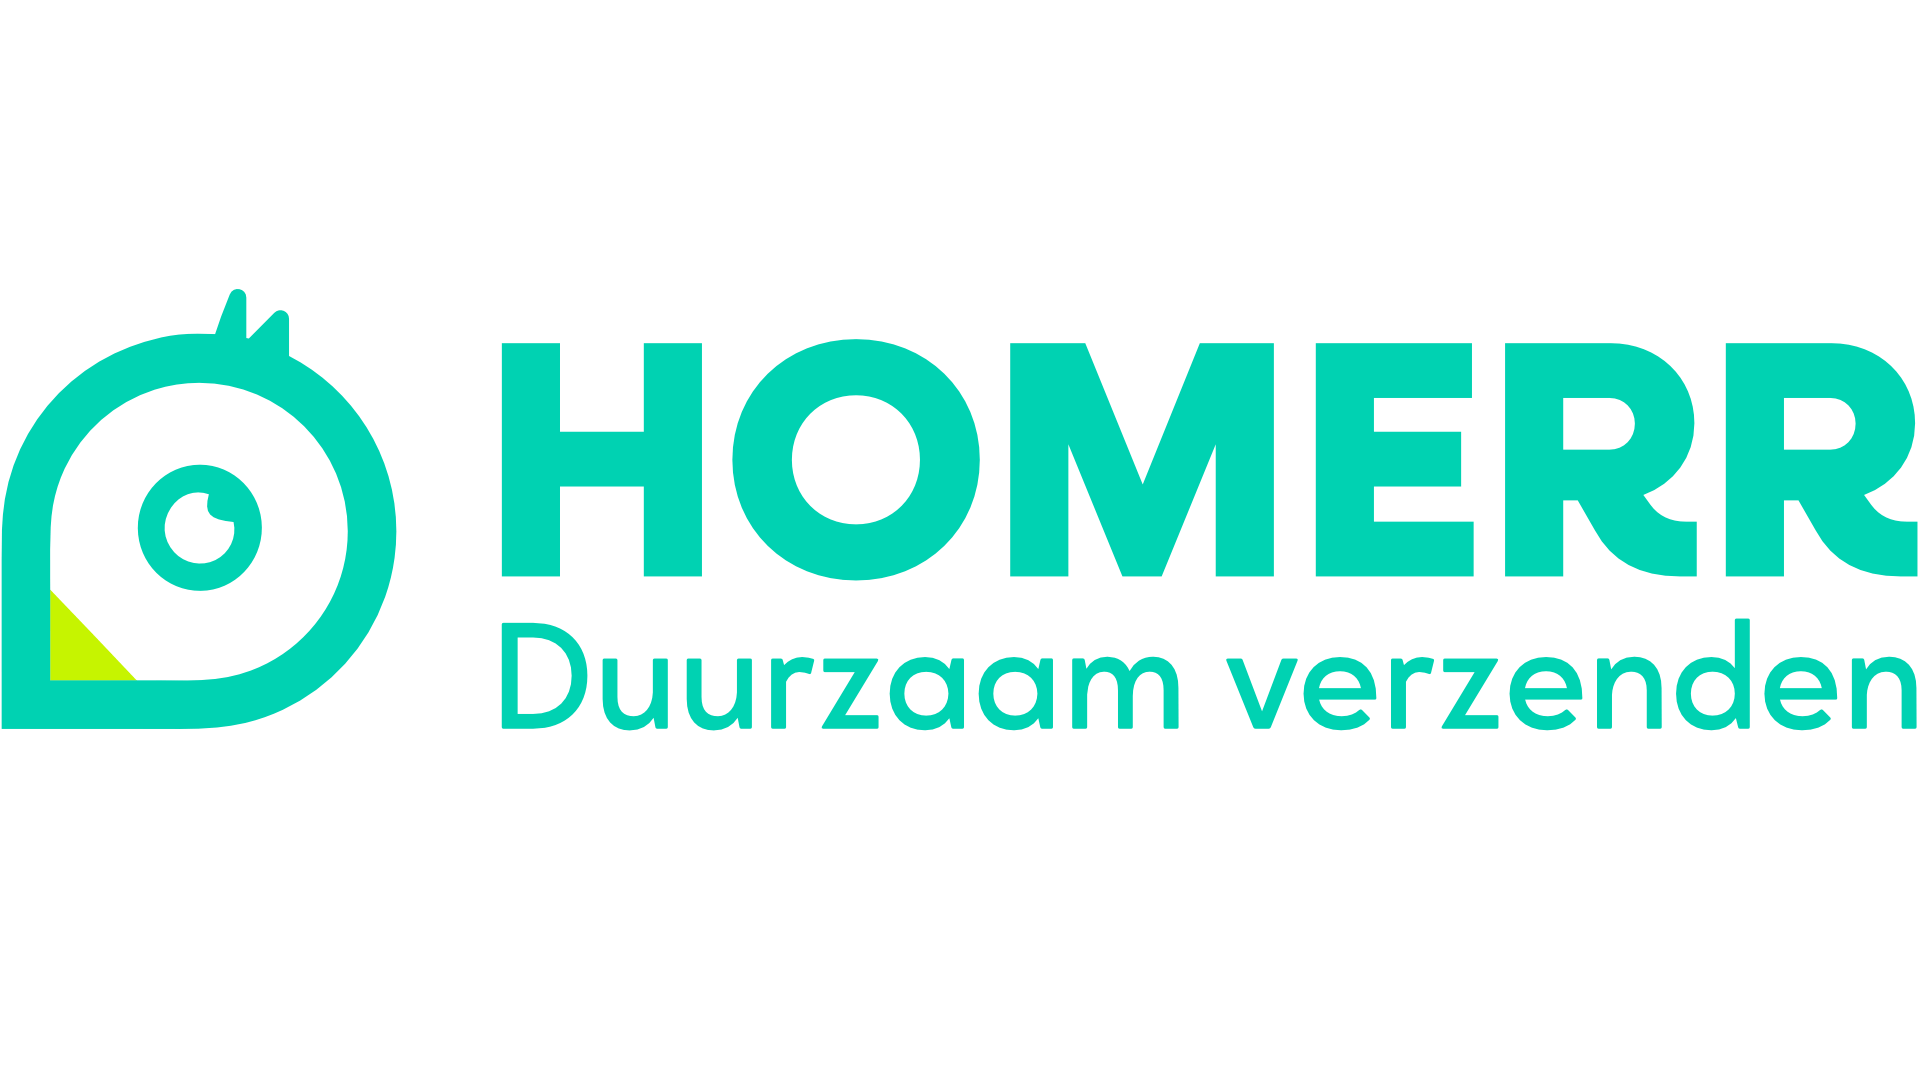 groet Avondeten staart Homerr pakketten verzenden vanaf € 3,31 - Shops United